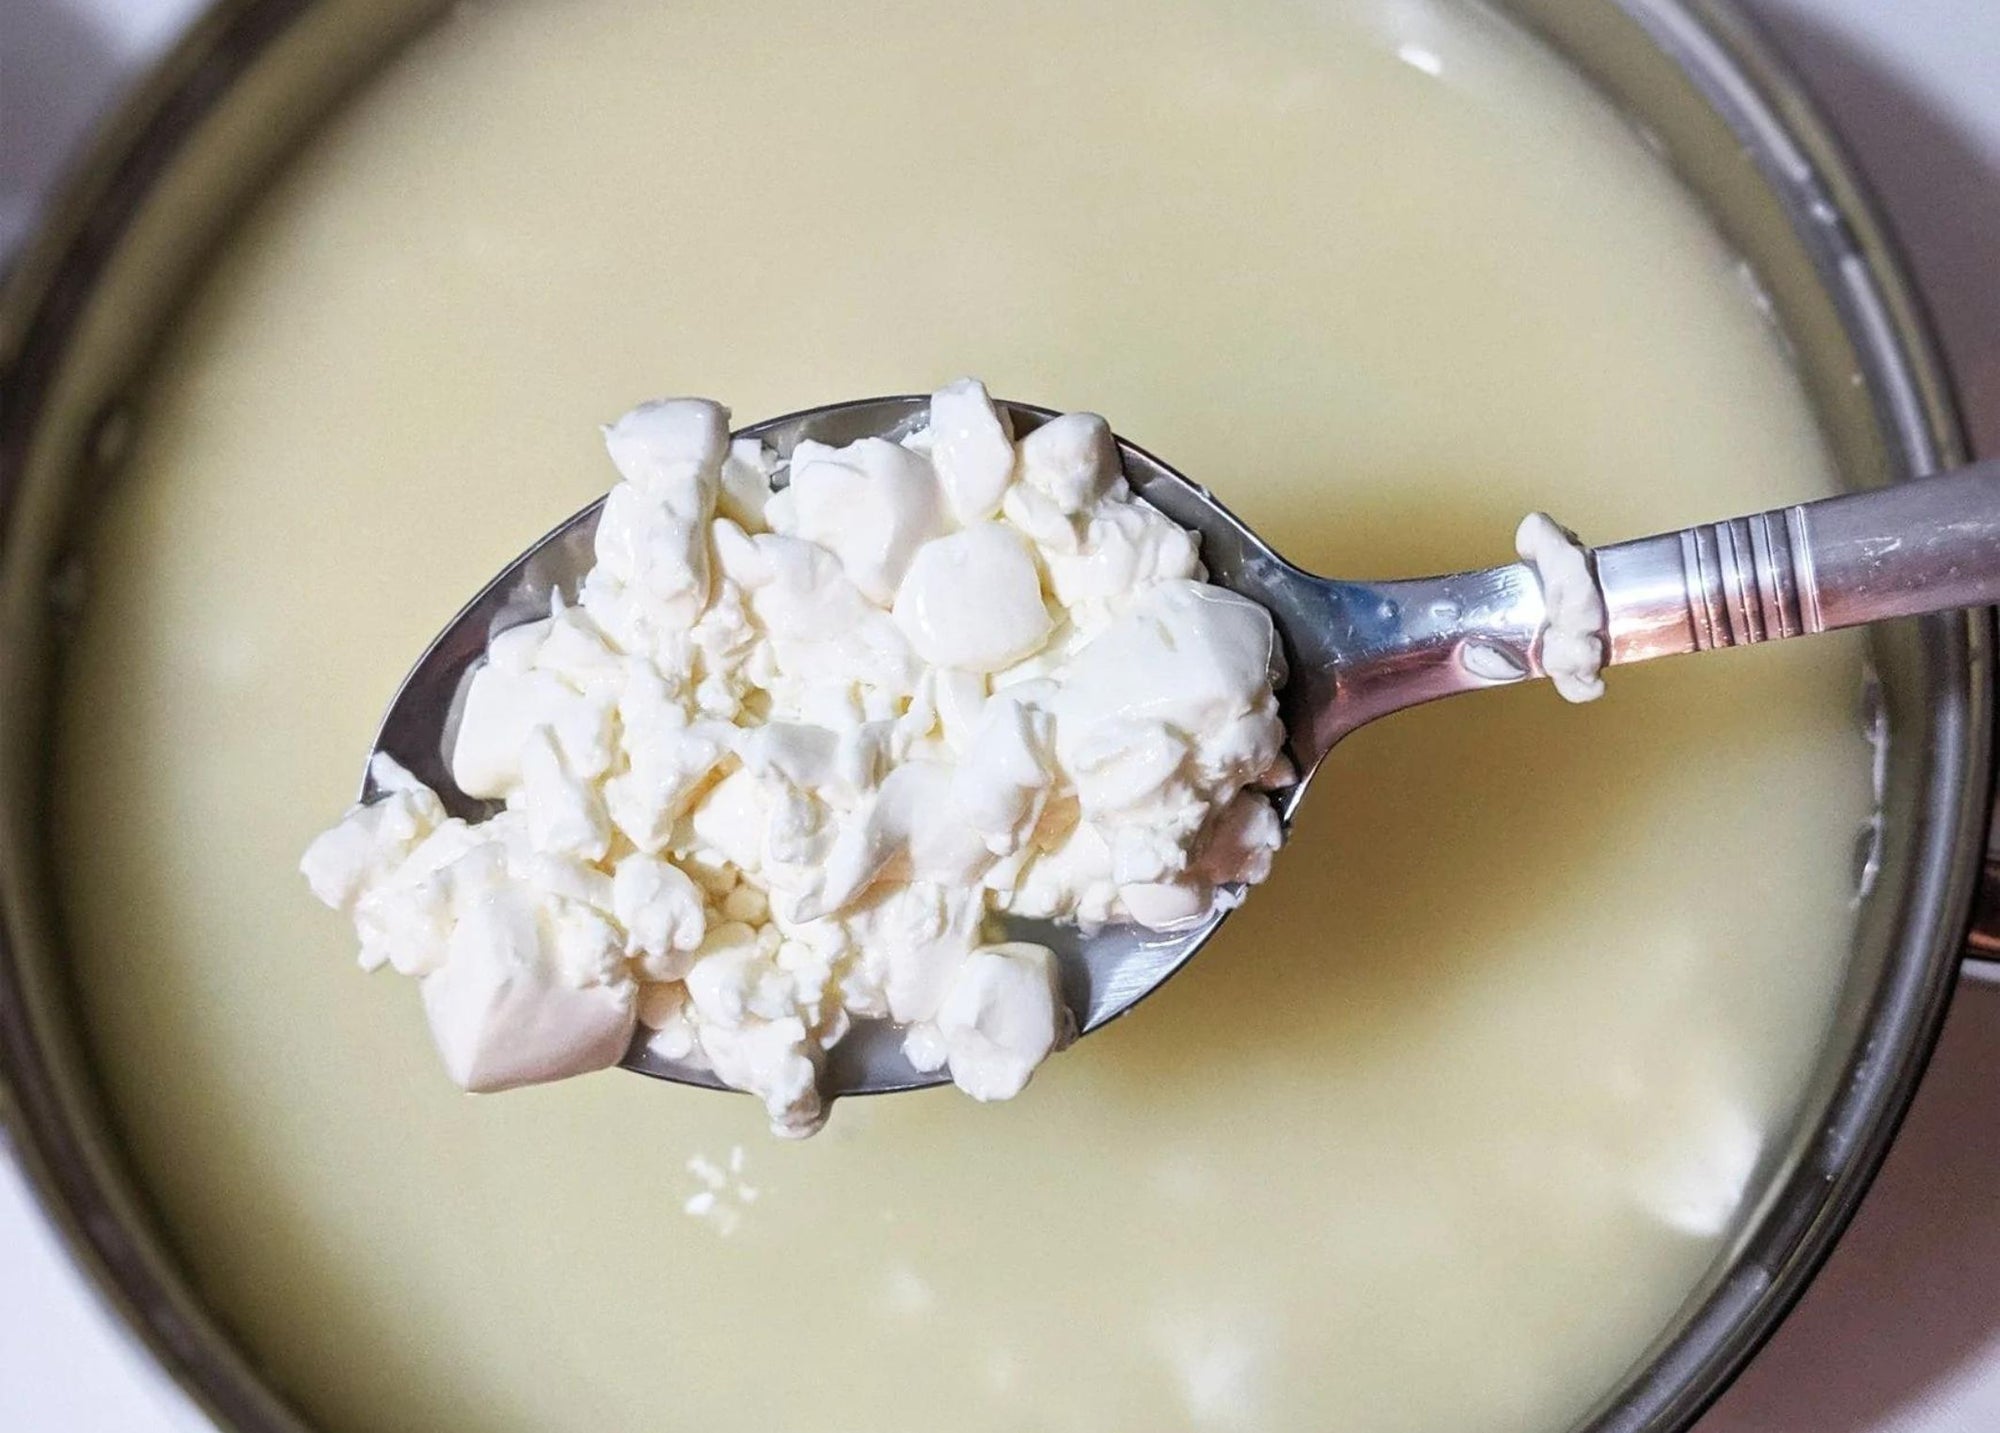 5 Reasons to Make Cheese at Home